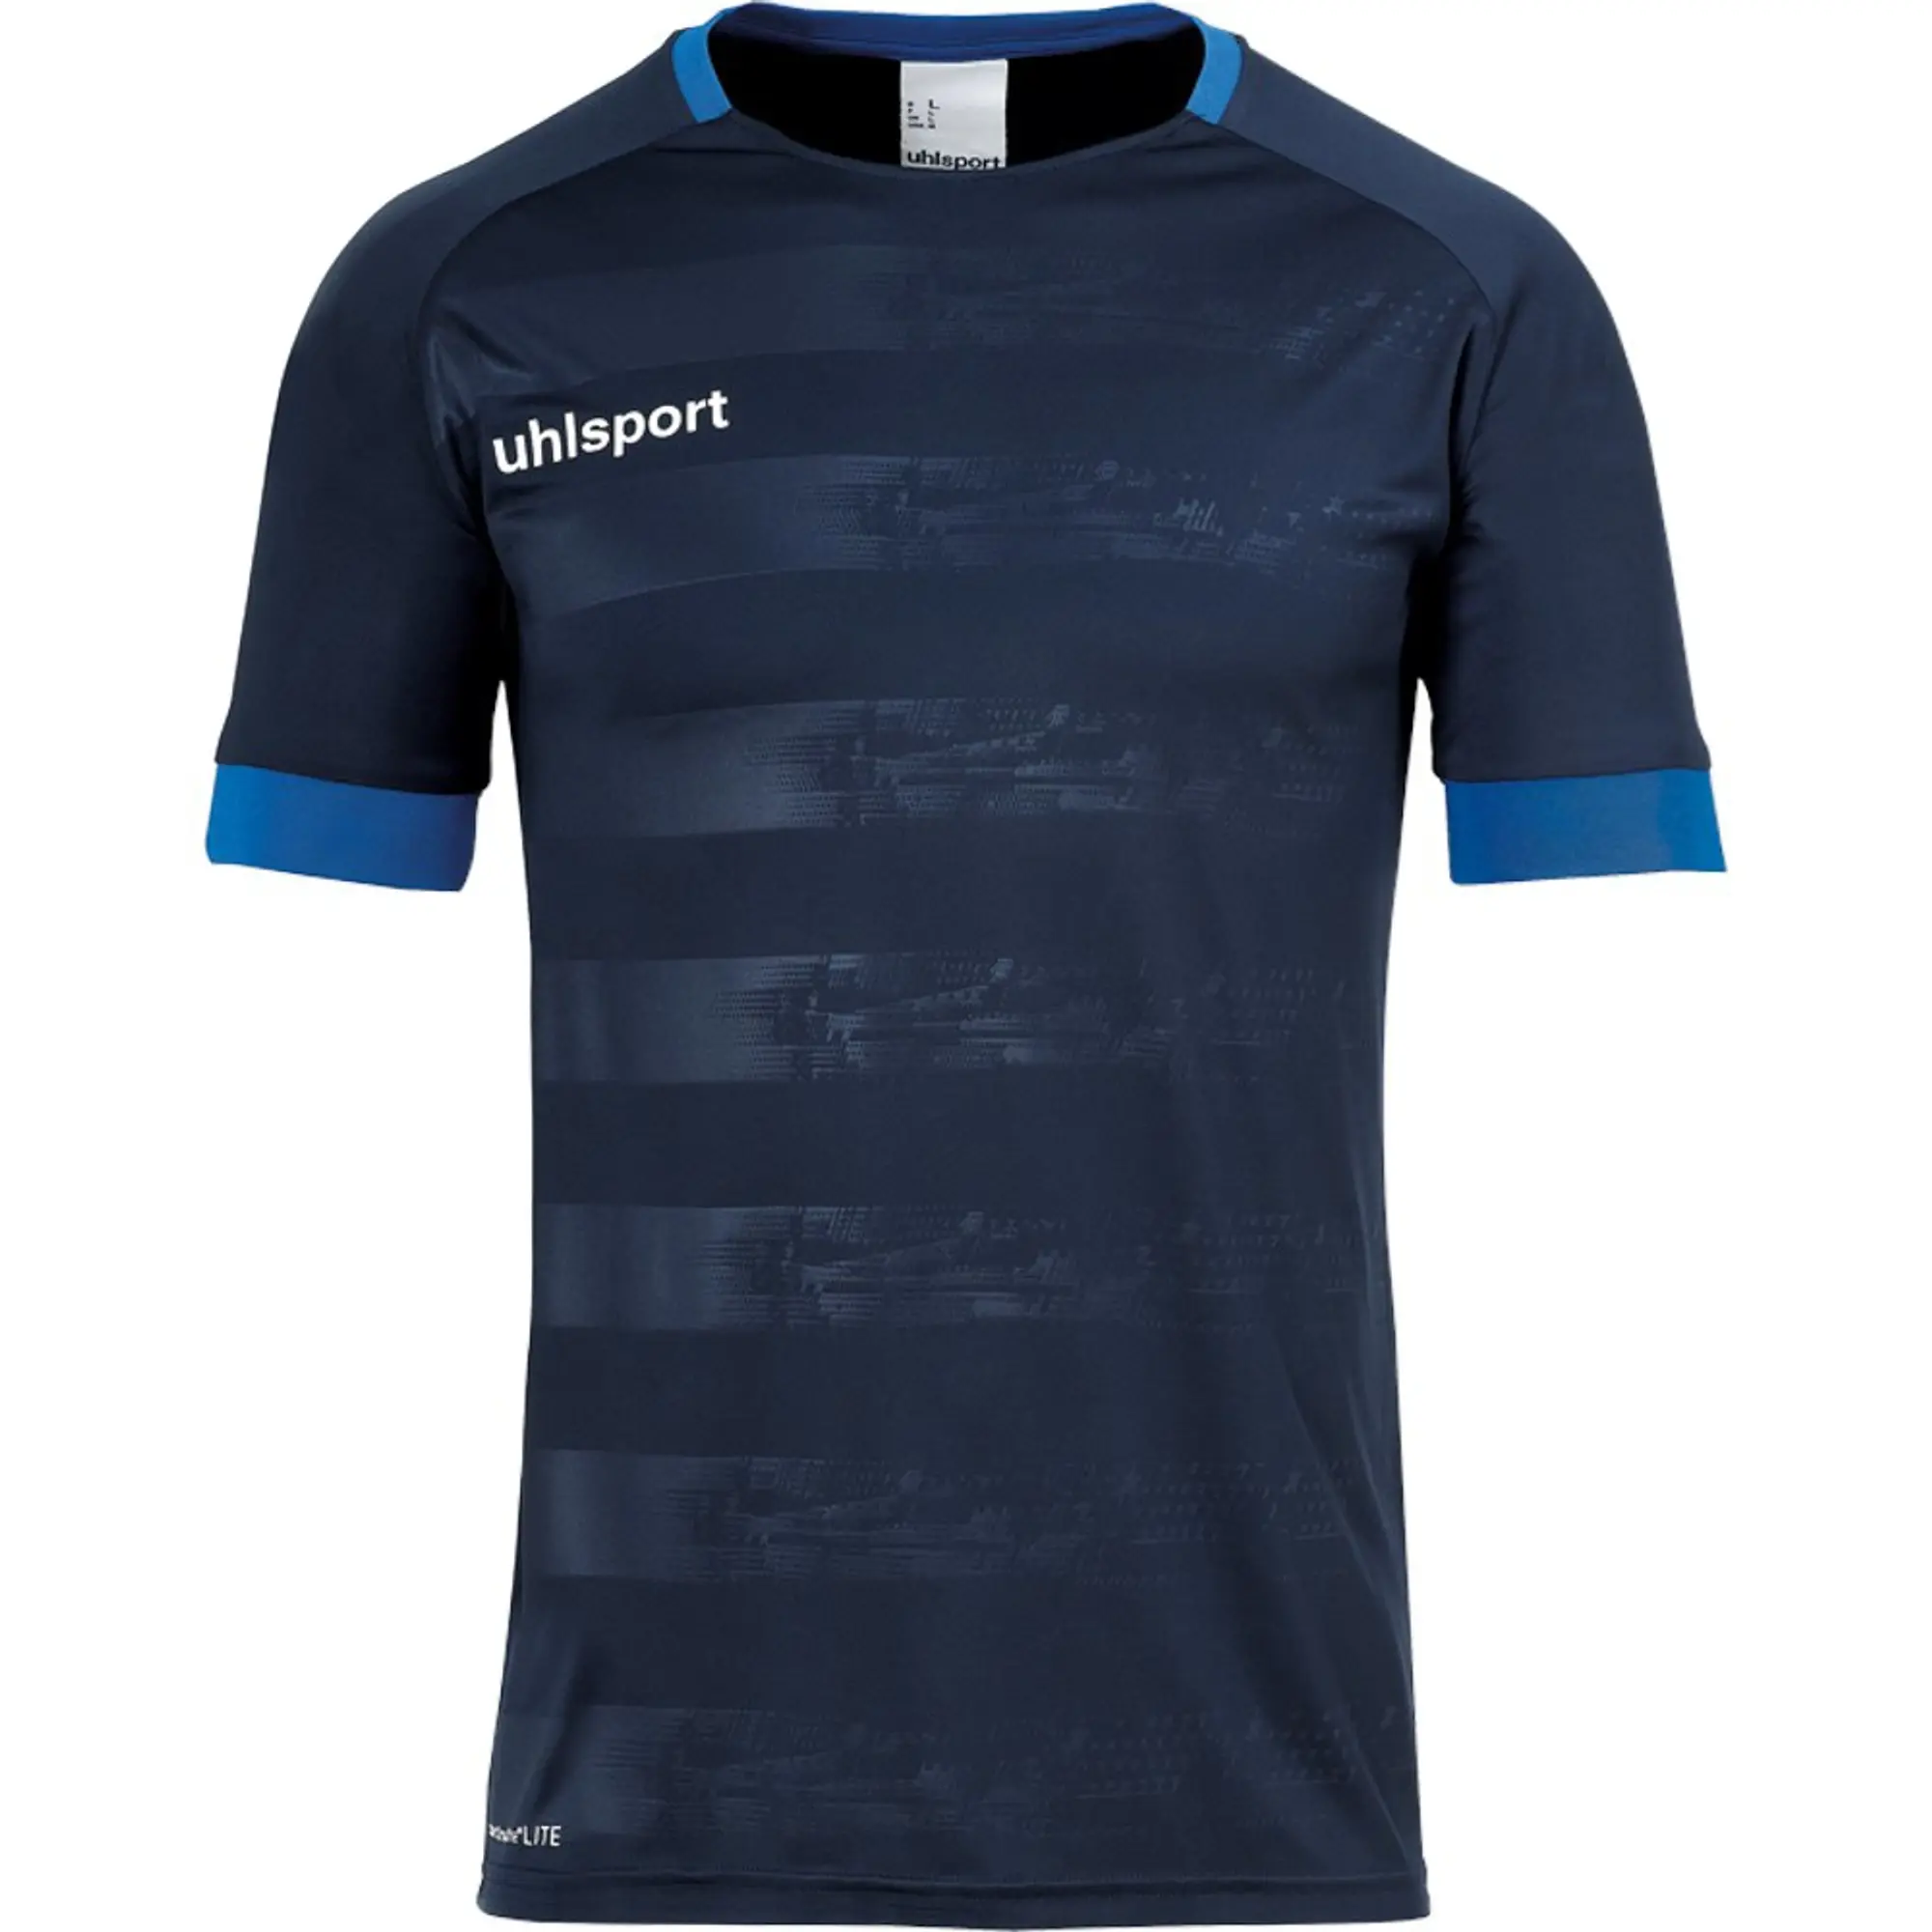 Uhlsport Division Ii Short Sleeve T-shirt  - Blue